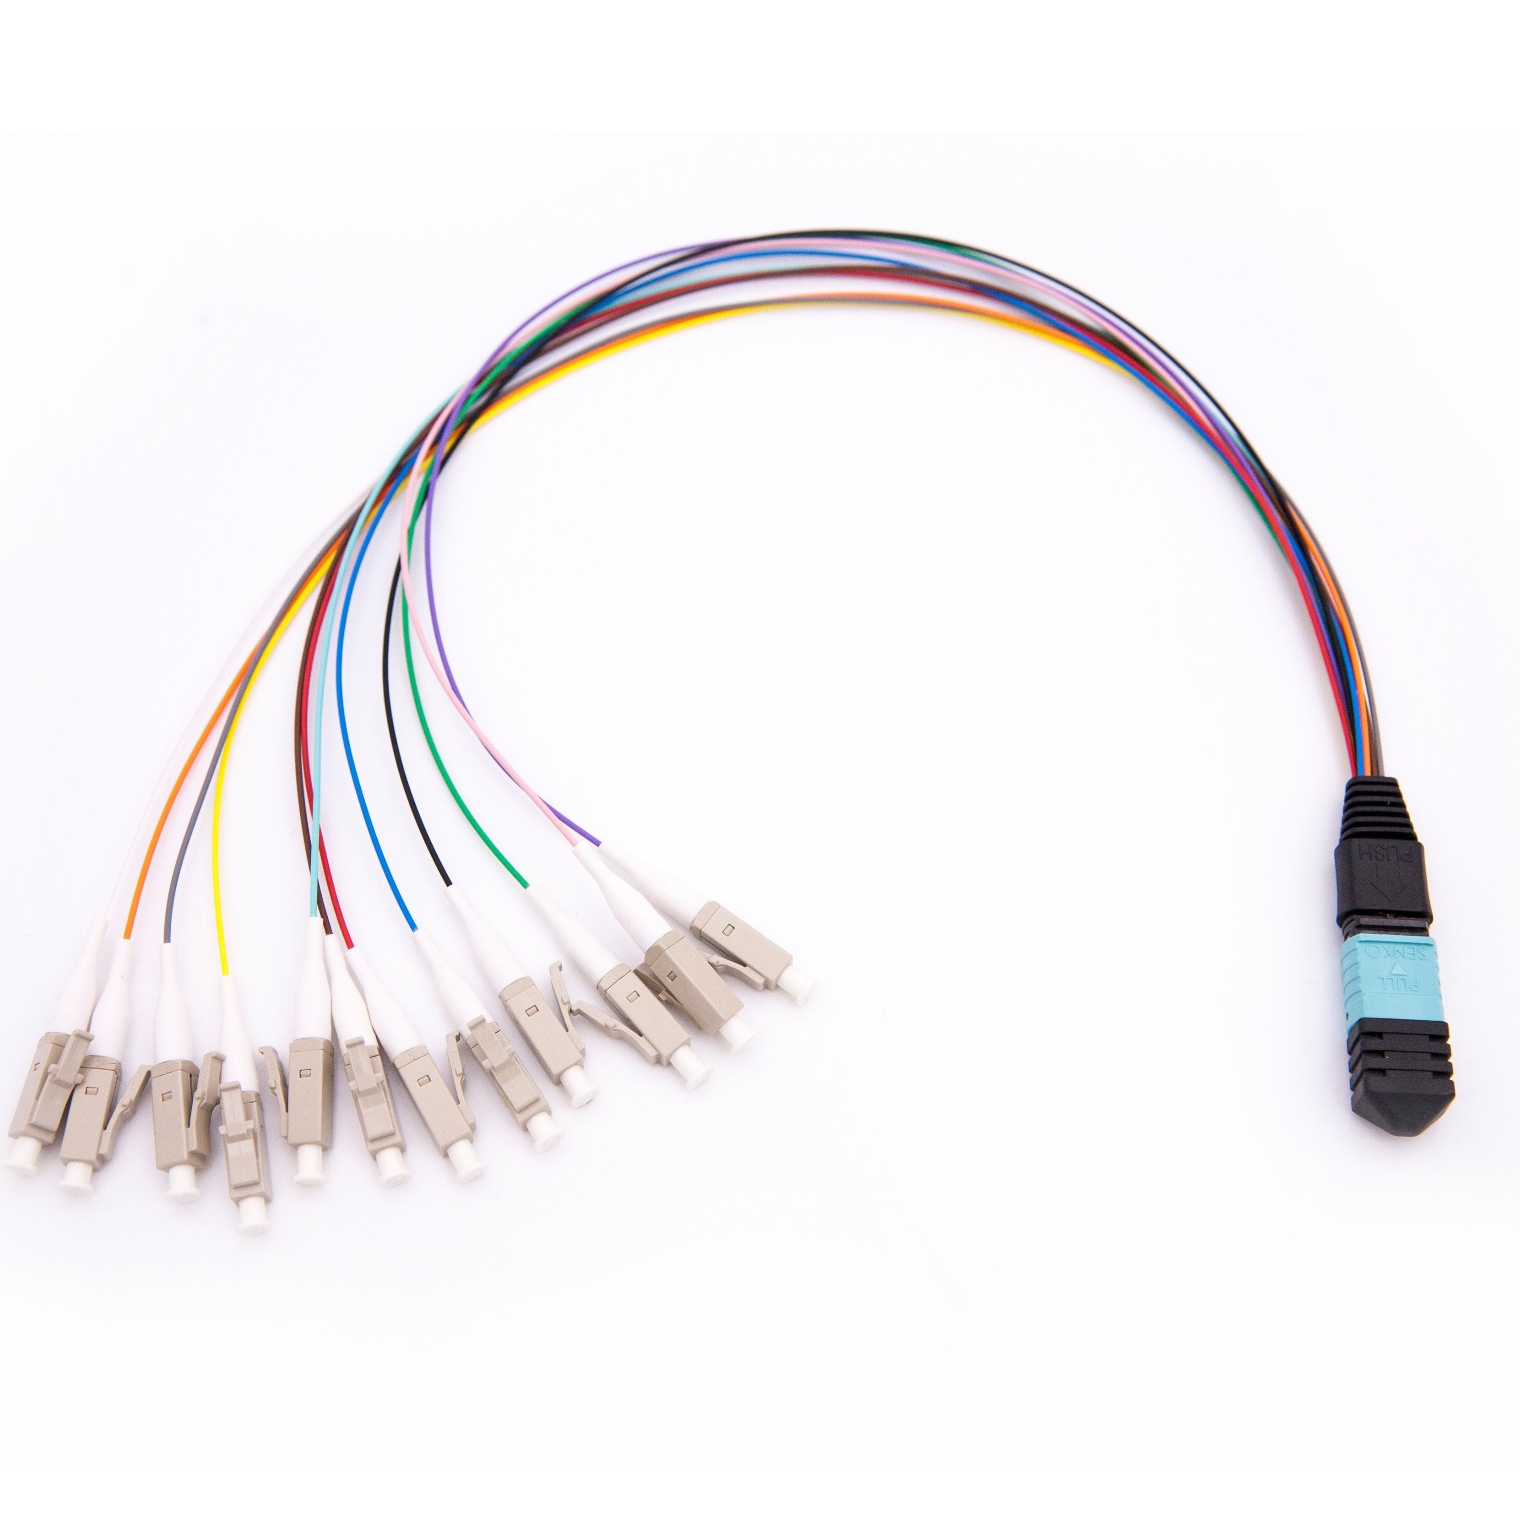 Vláknový propojovací kabel ventilátoru MPO / MTP